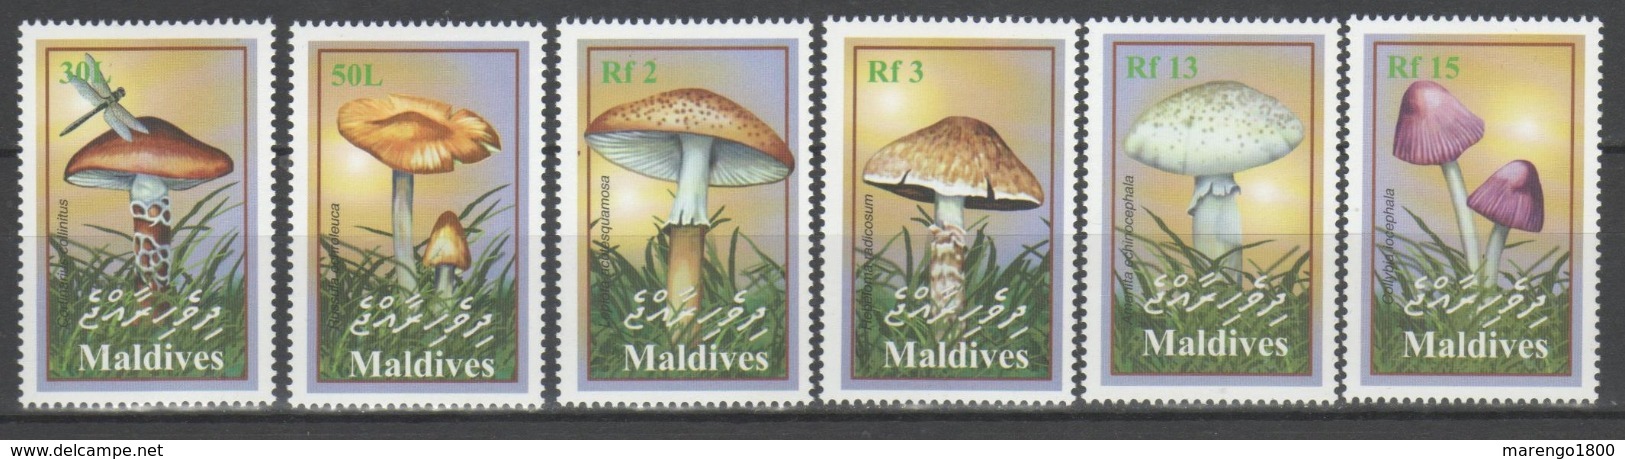 Maldive 2001 - Funghi           (g5785) - Funghi